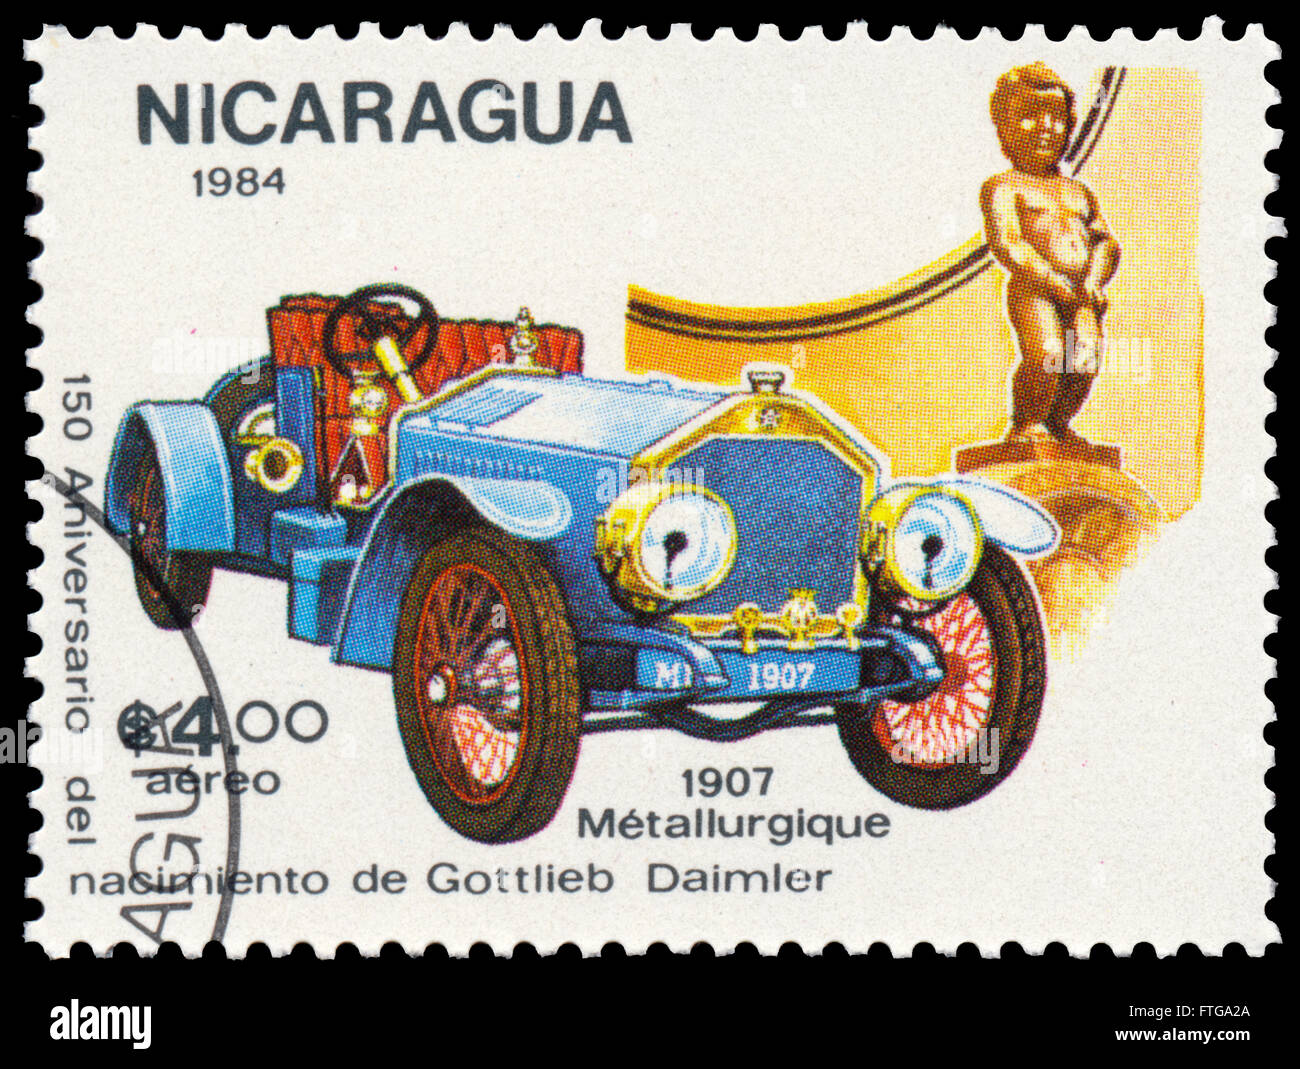 BUDAPEST, Ungarn - 18. März 2016: eine Briefmarke gedruckt in Nicaragua zeigt Daimler, 1907, ca. 1984 Stockfoto